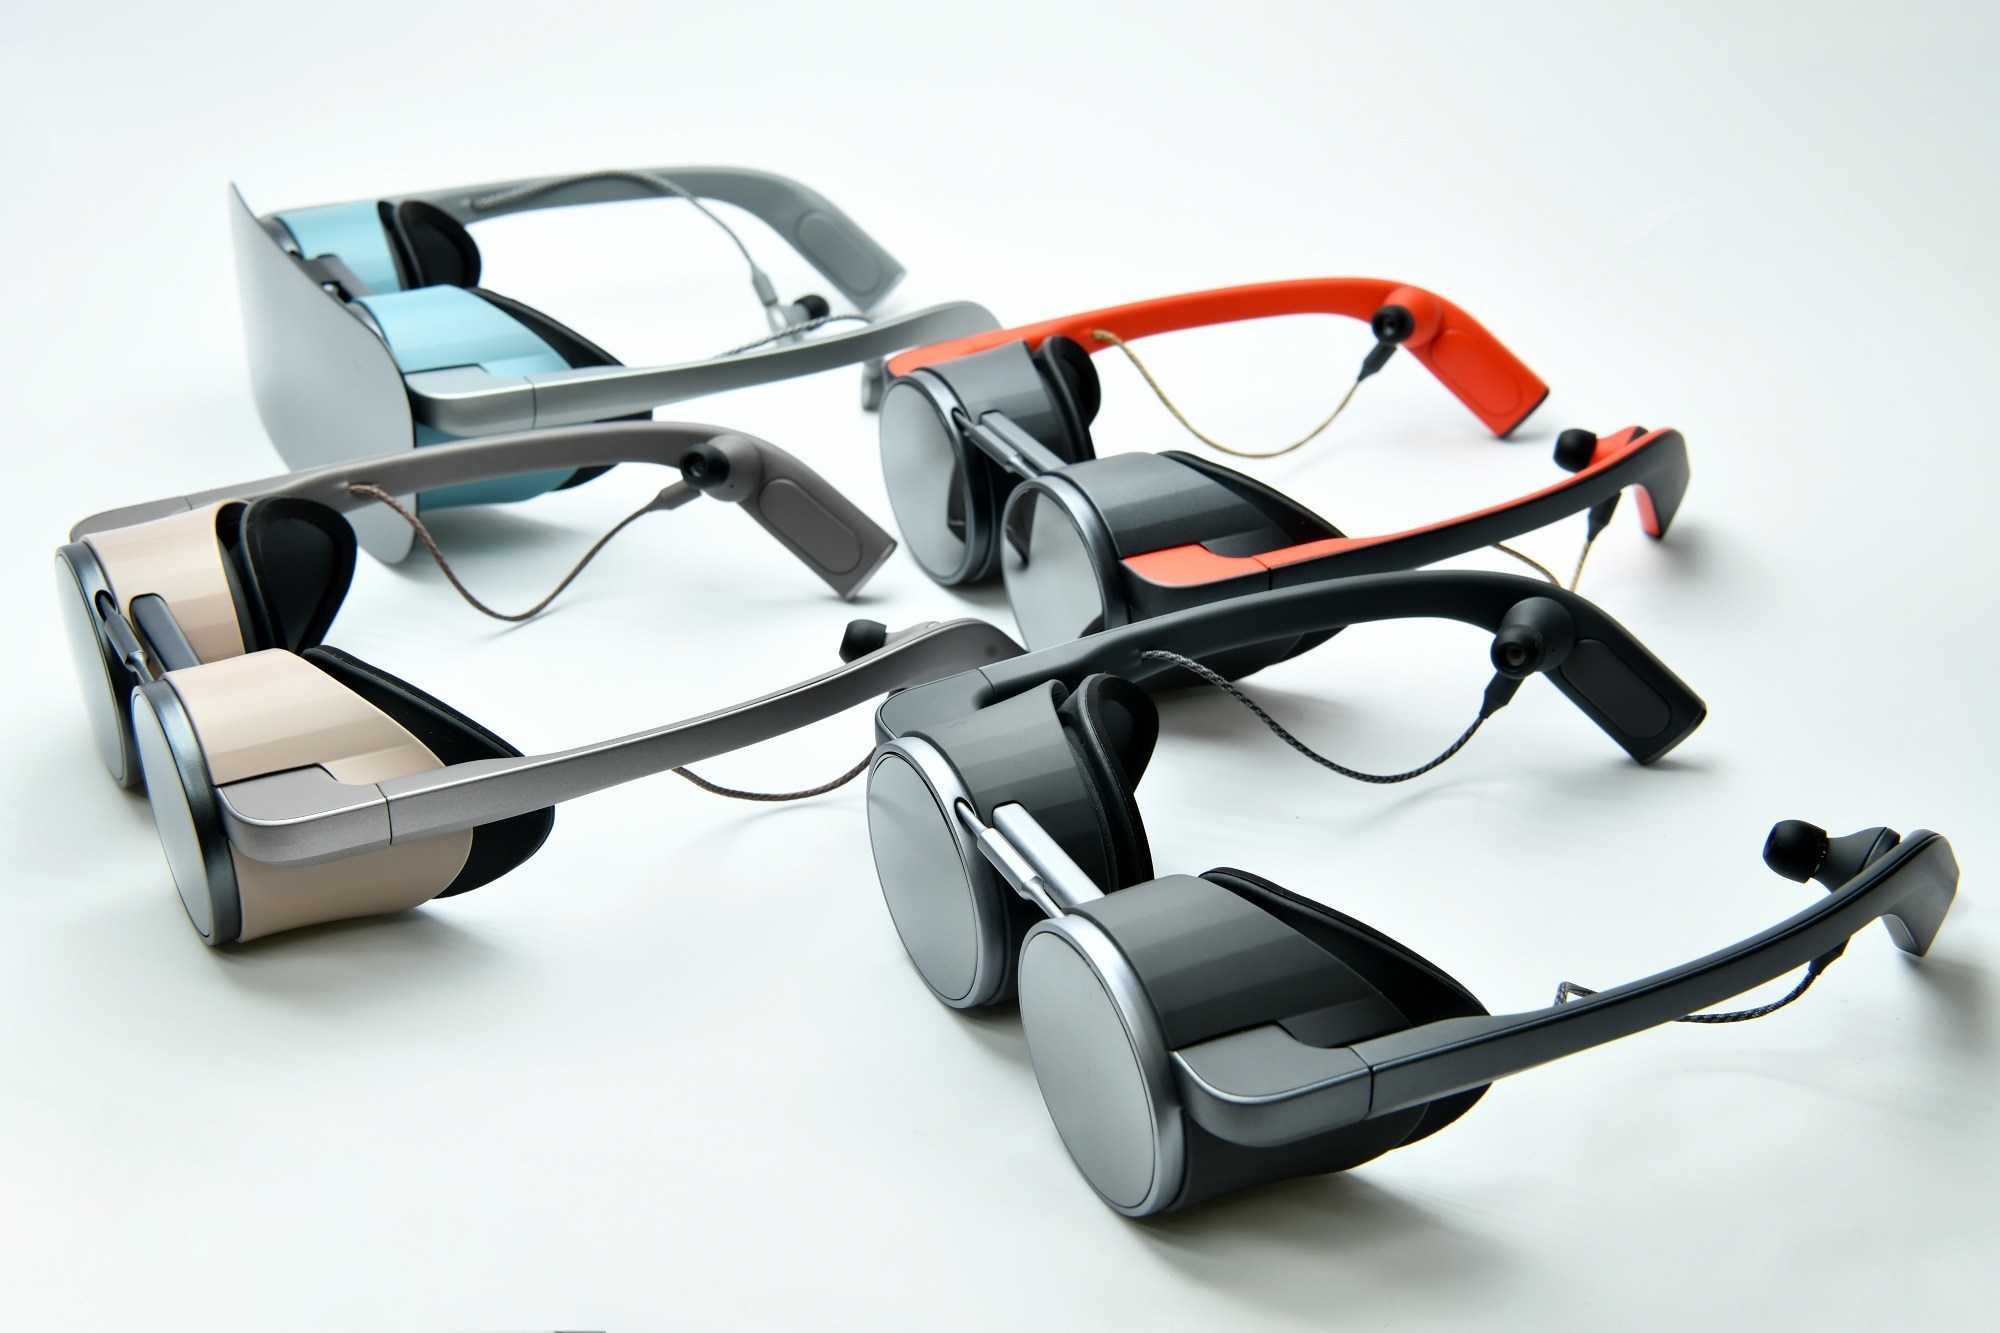 Panasonic ilgi çekici tasarıma sahip VR gözlüğünü duyurdu